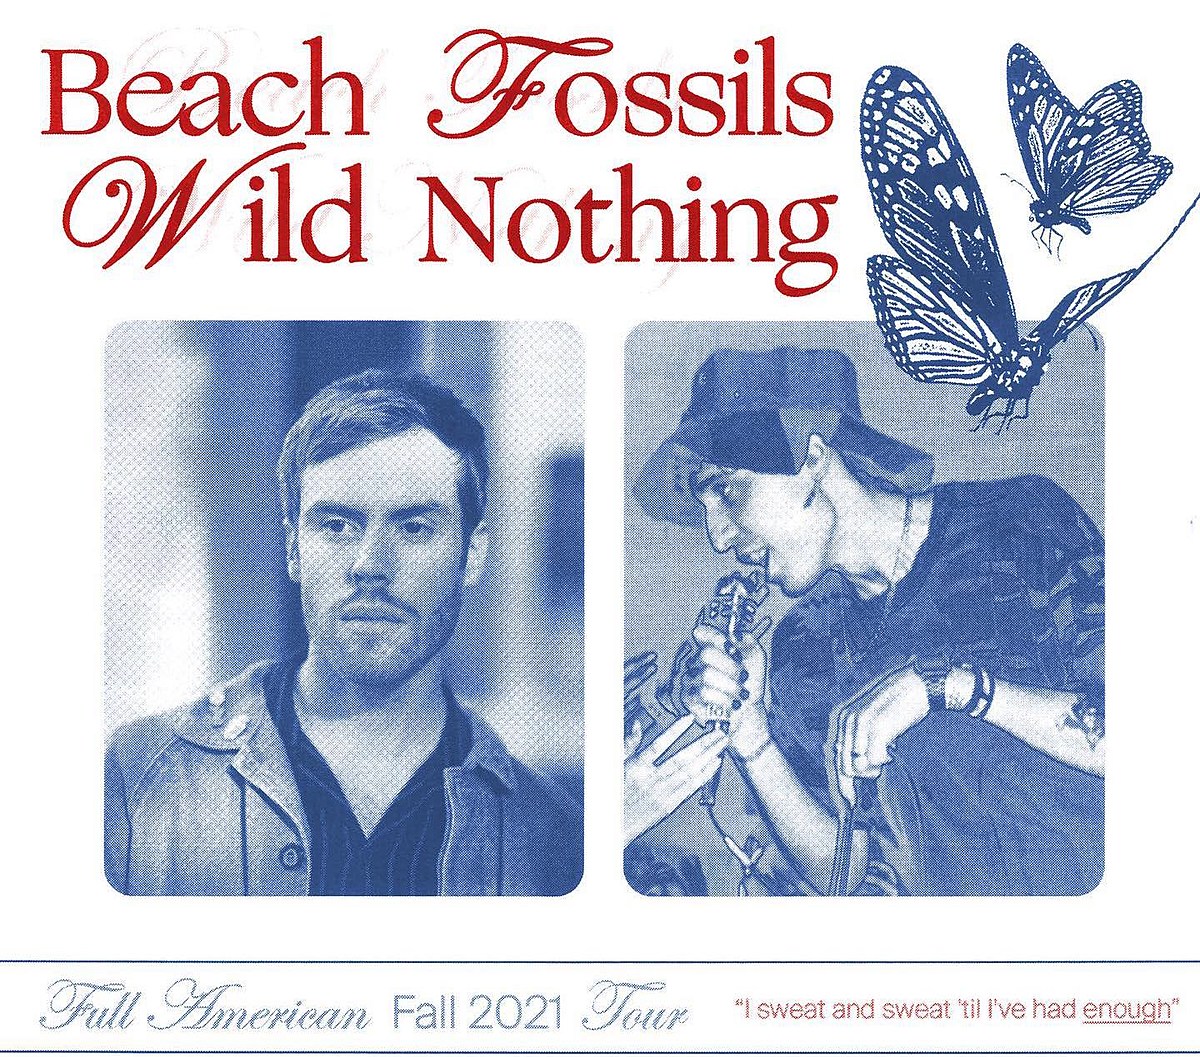 beach fossils australia tour